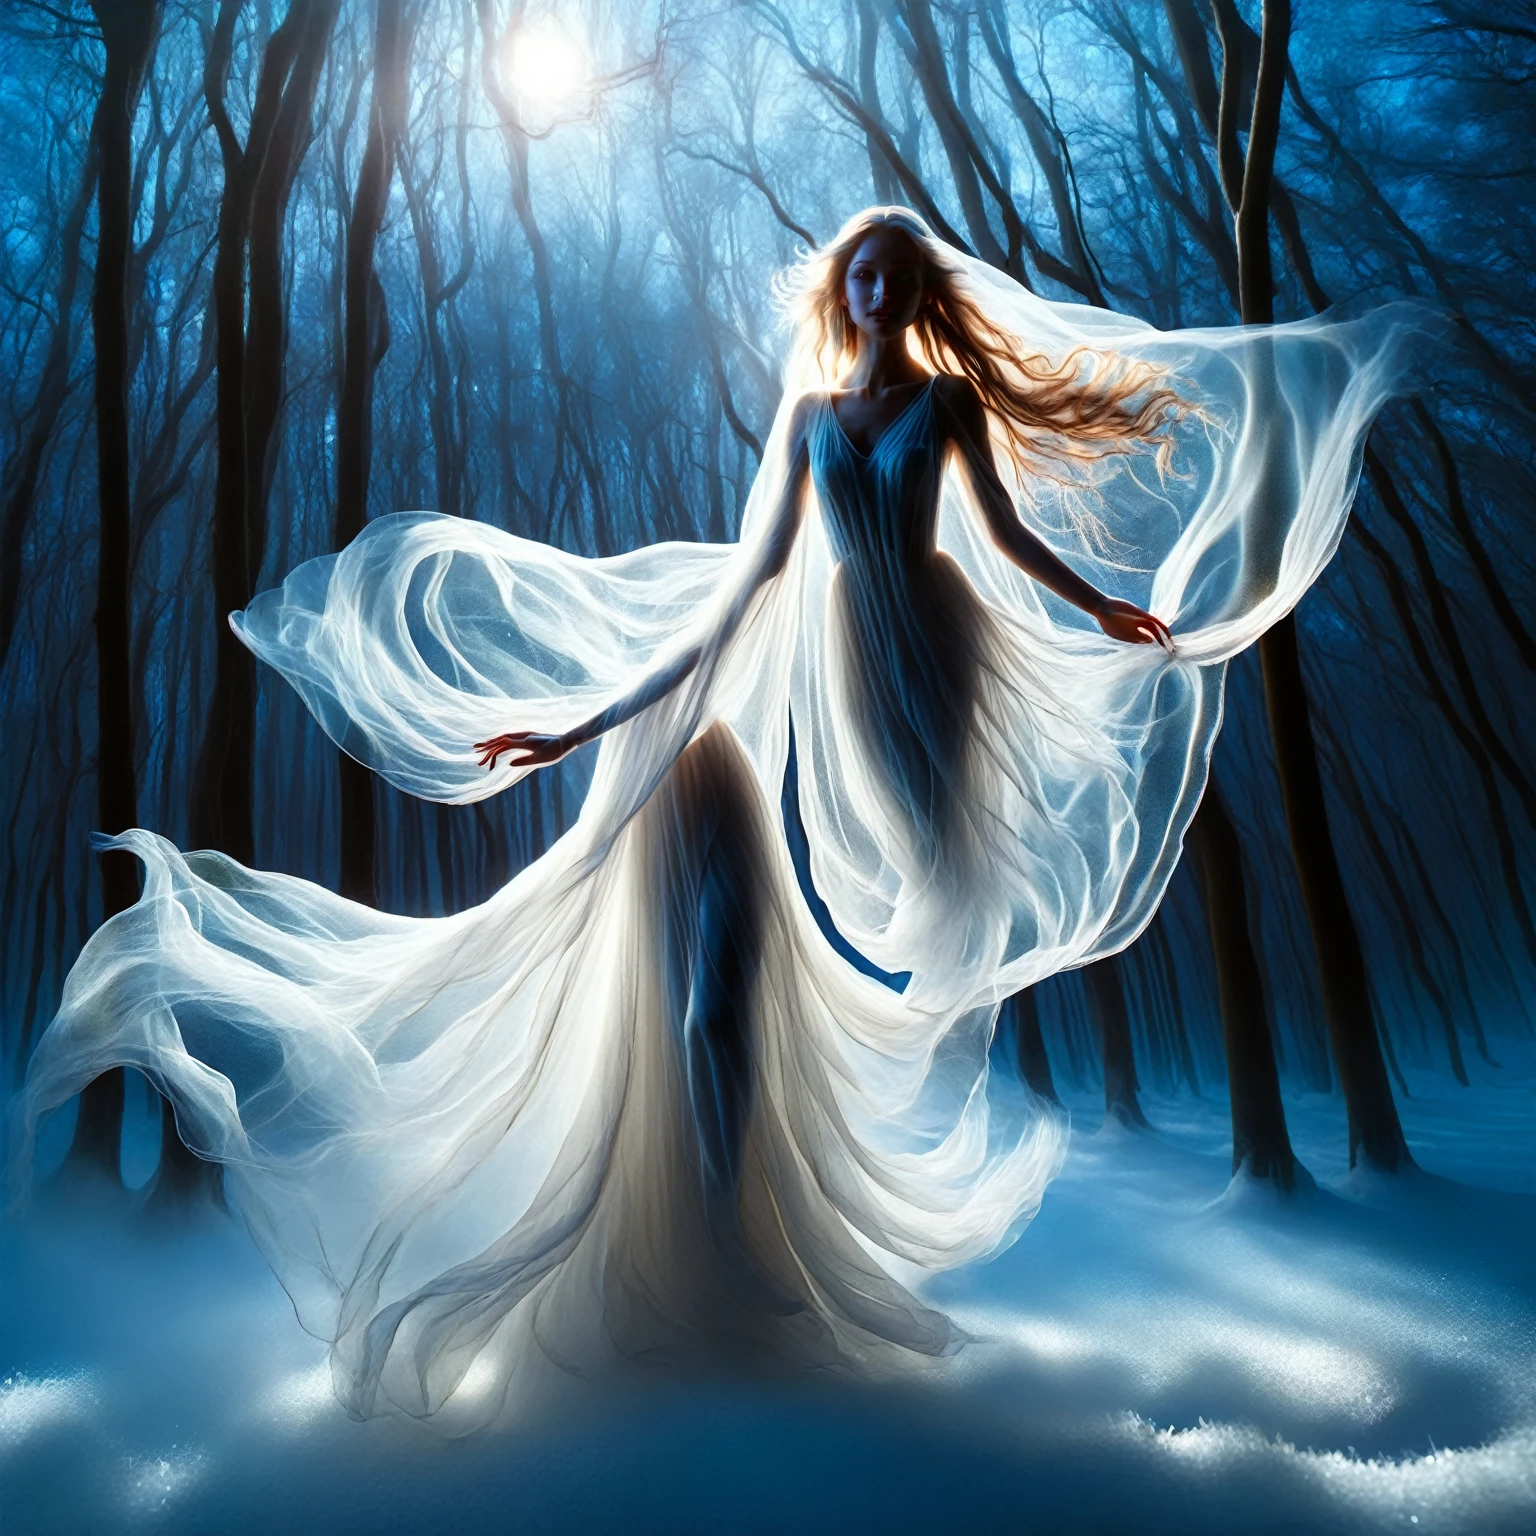 拉尔神话, 月光仙女, 优雅的身影散发着月光的柔和光芒. 美丽迷人的眼睛. 她彻夜跳舞, 她的动作飘逸流畅, 她在黑暗中散发出平静的光芒, 被白雪覆盖的迷人森林, 转运,幽灵风格,